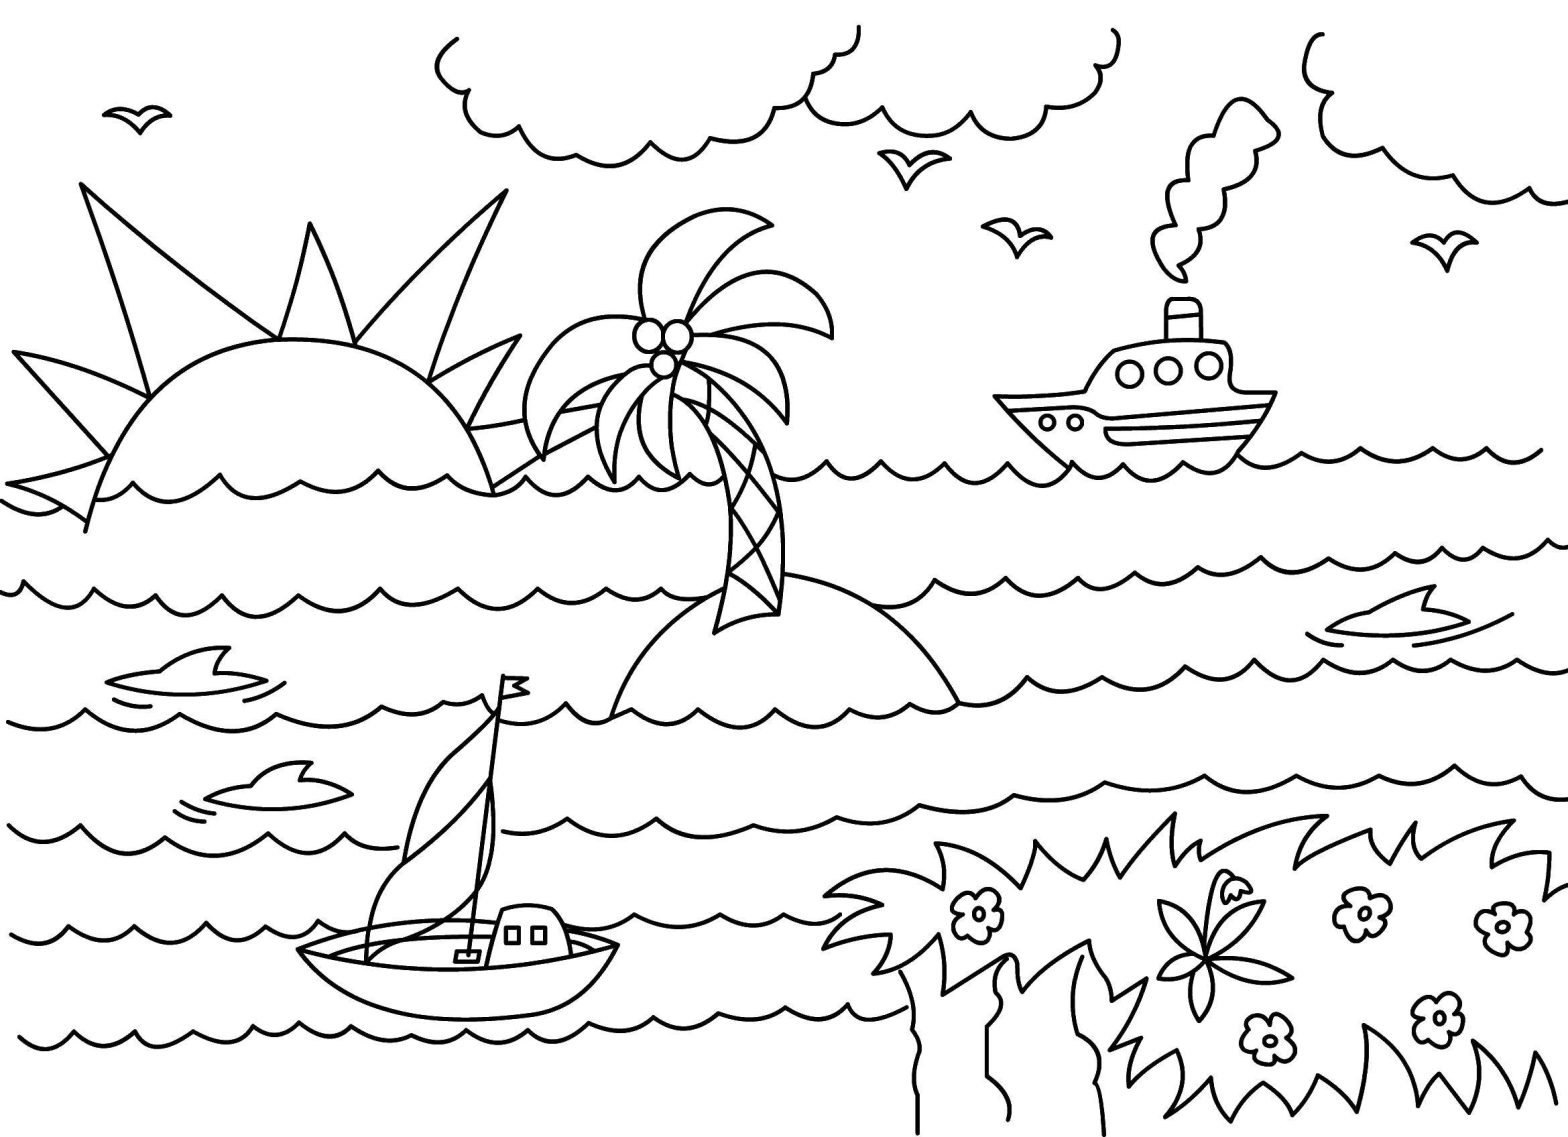 Раскраски с изображением моря, кораблей и островов для детей (море)